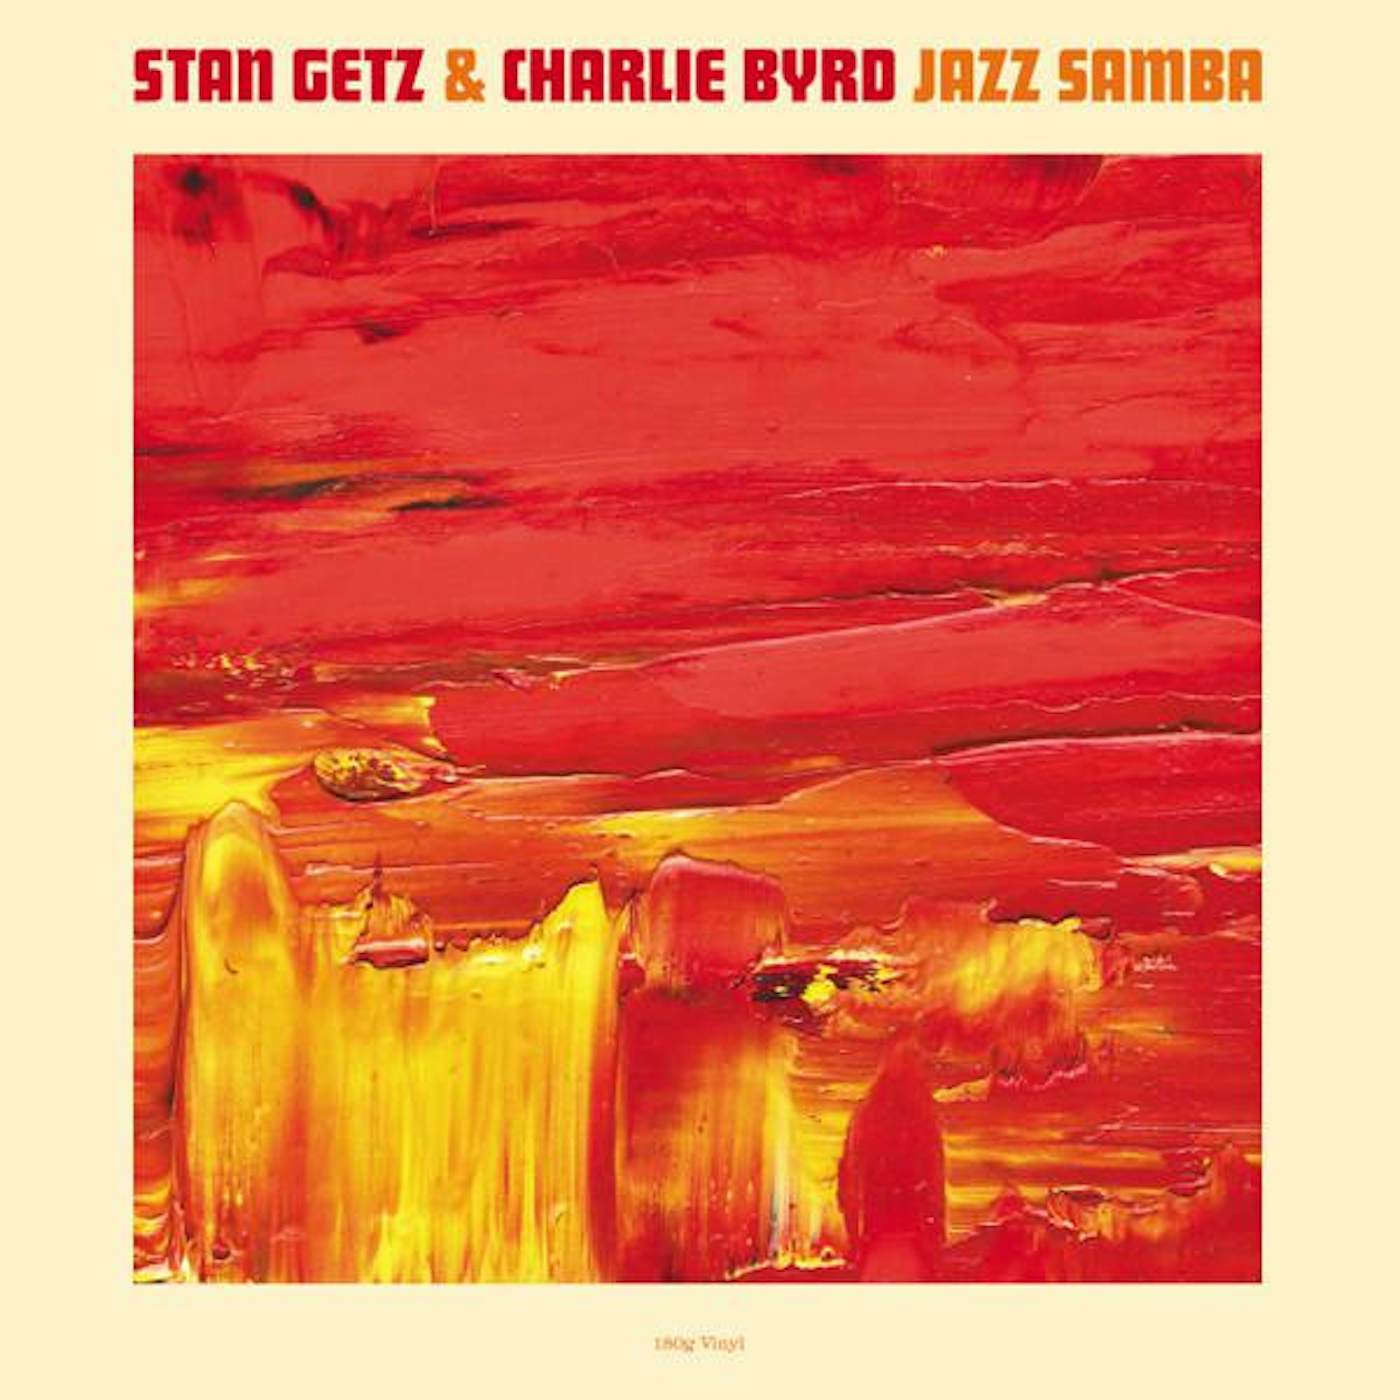 Stan Getz & Charlie Byrd JAZZ SAMBA HQ Vinyl Record